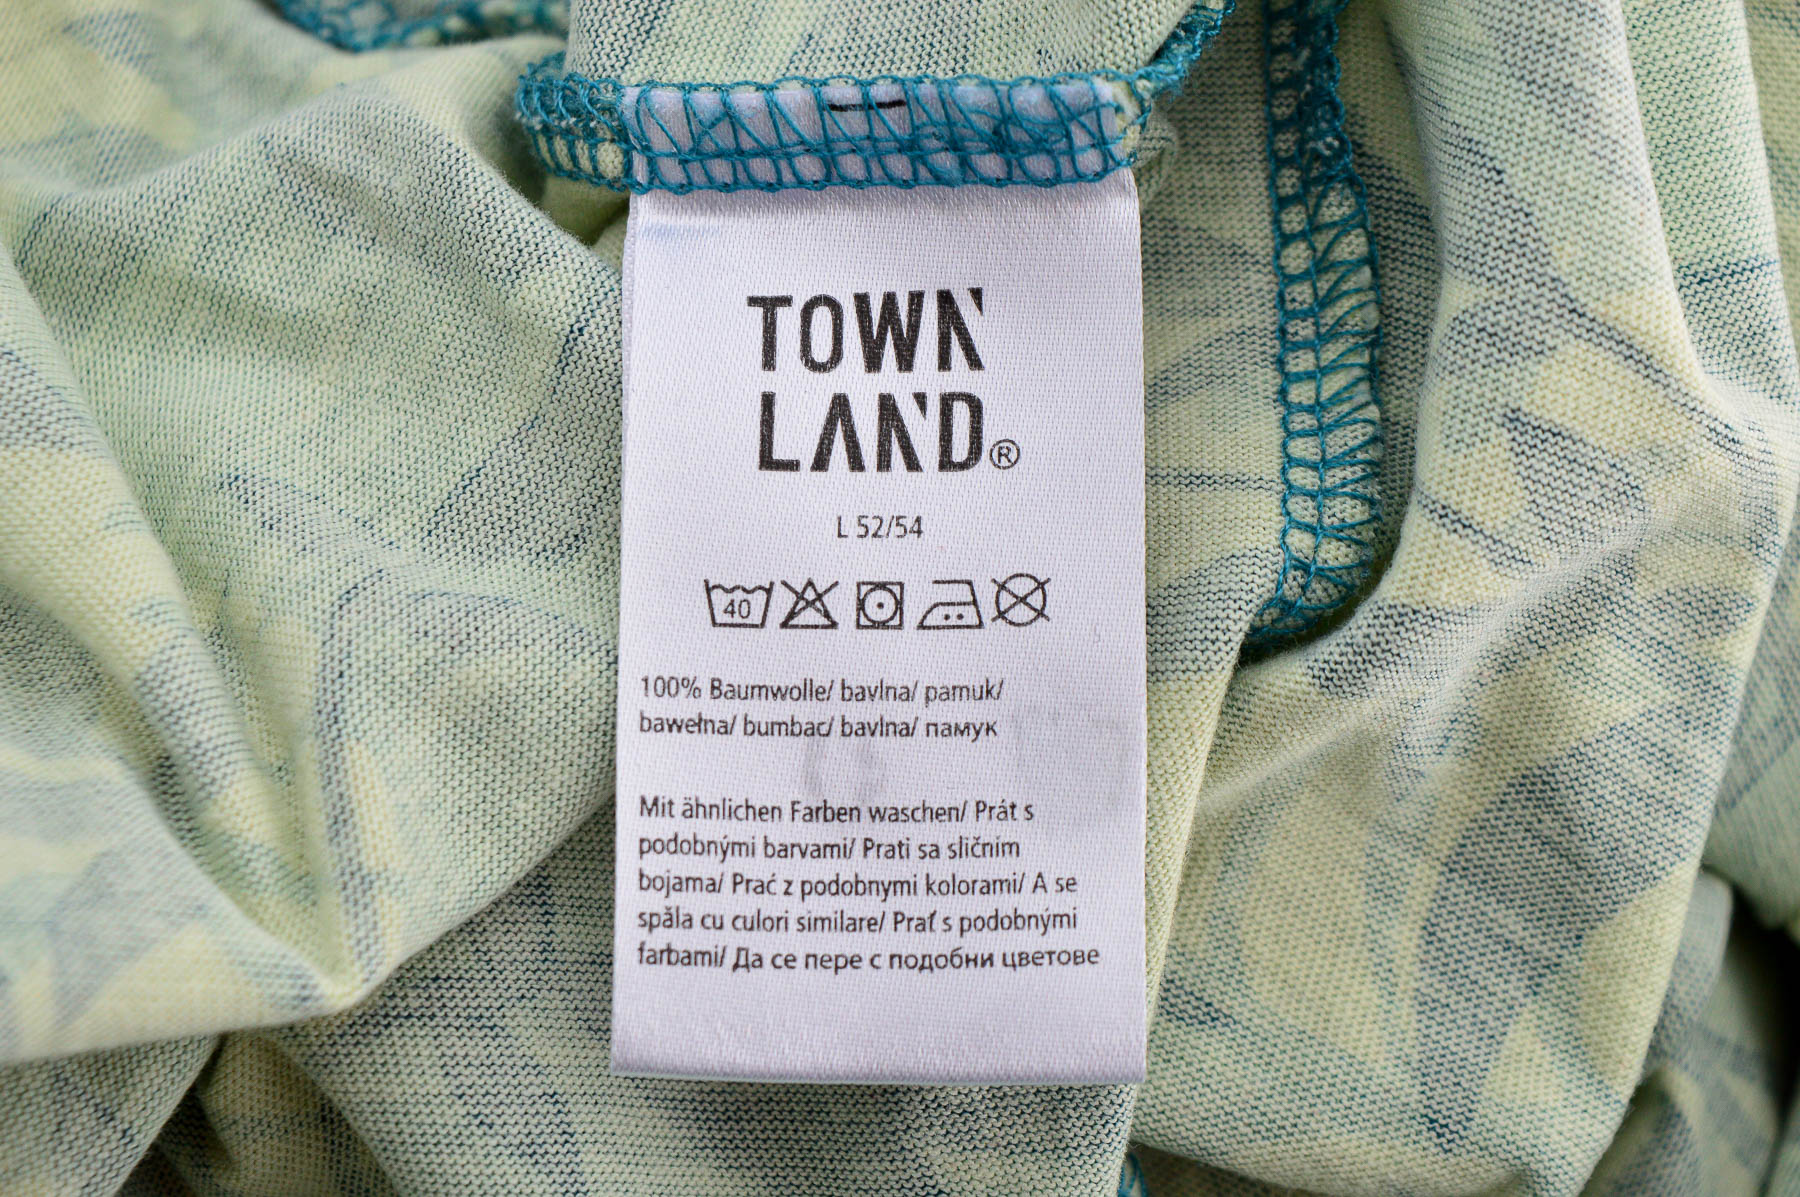 Men's shorts - Town land - 2